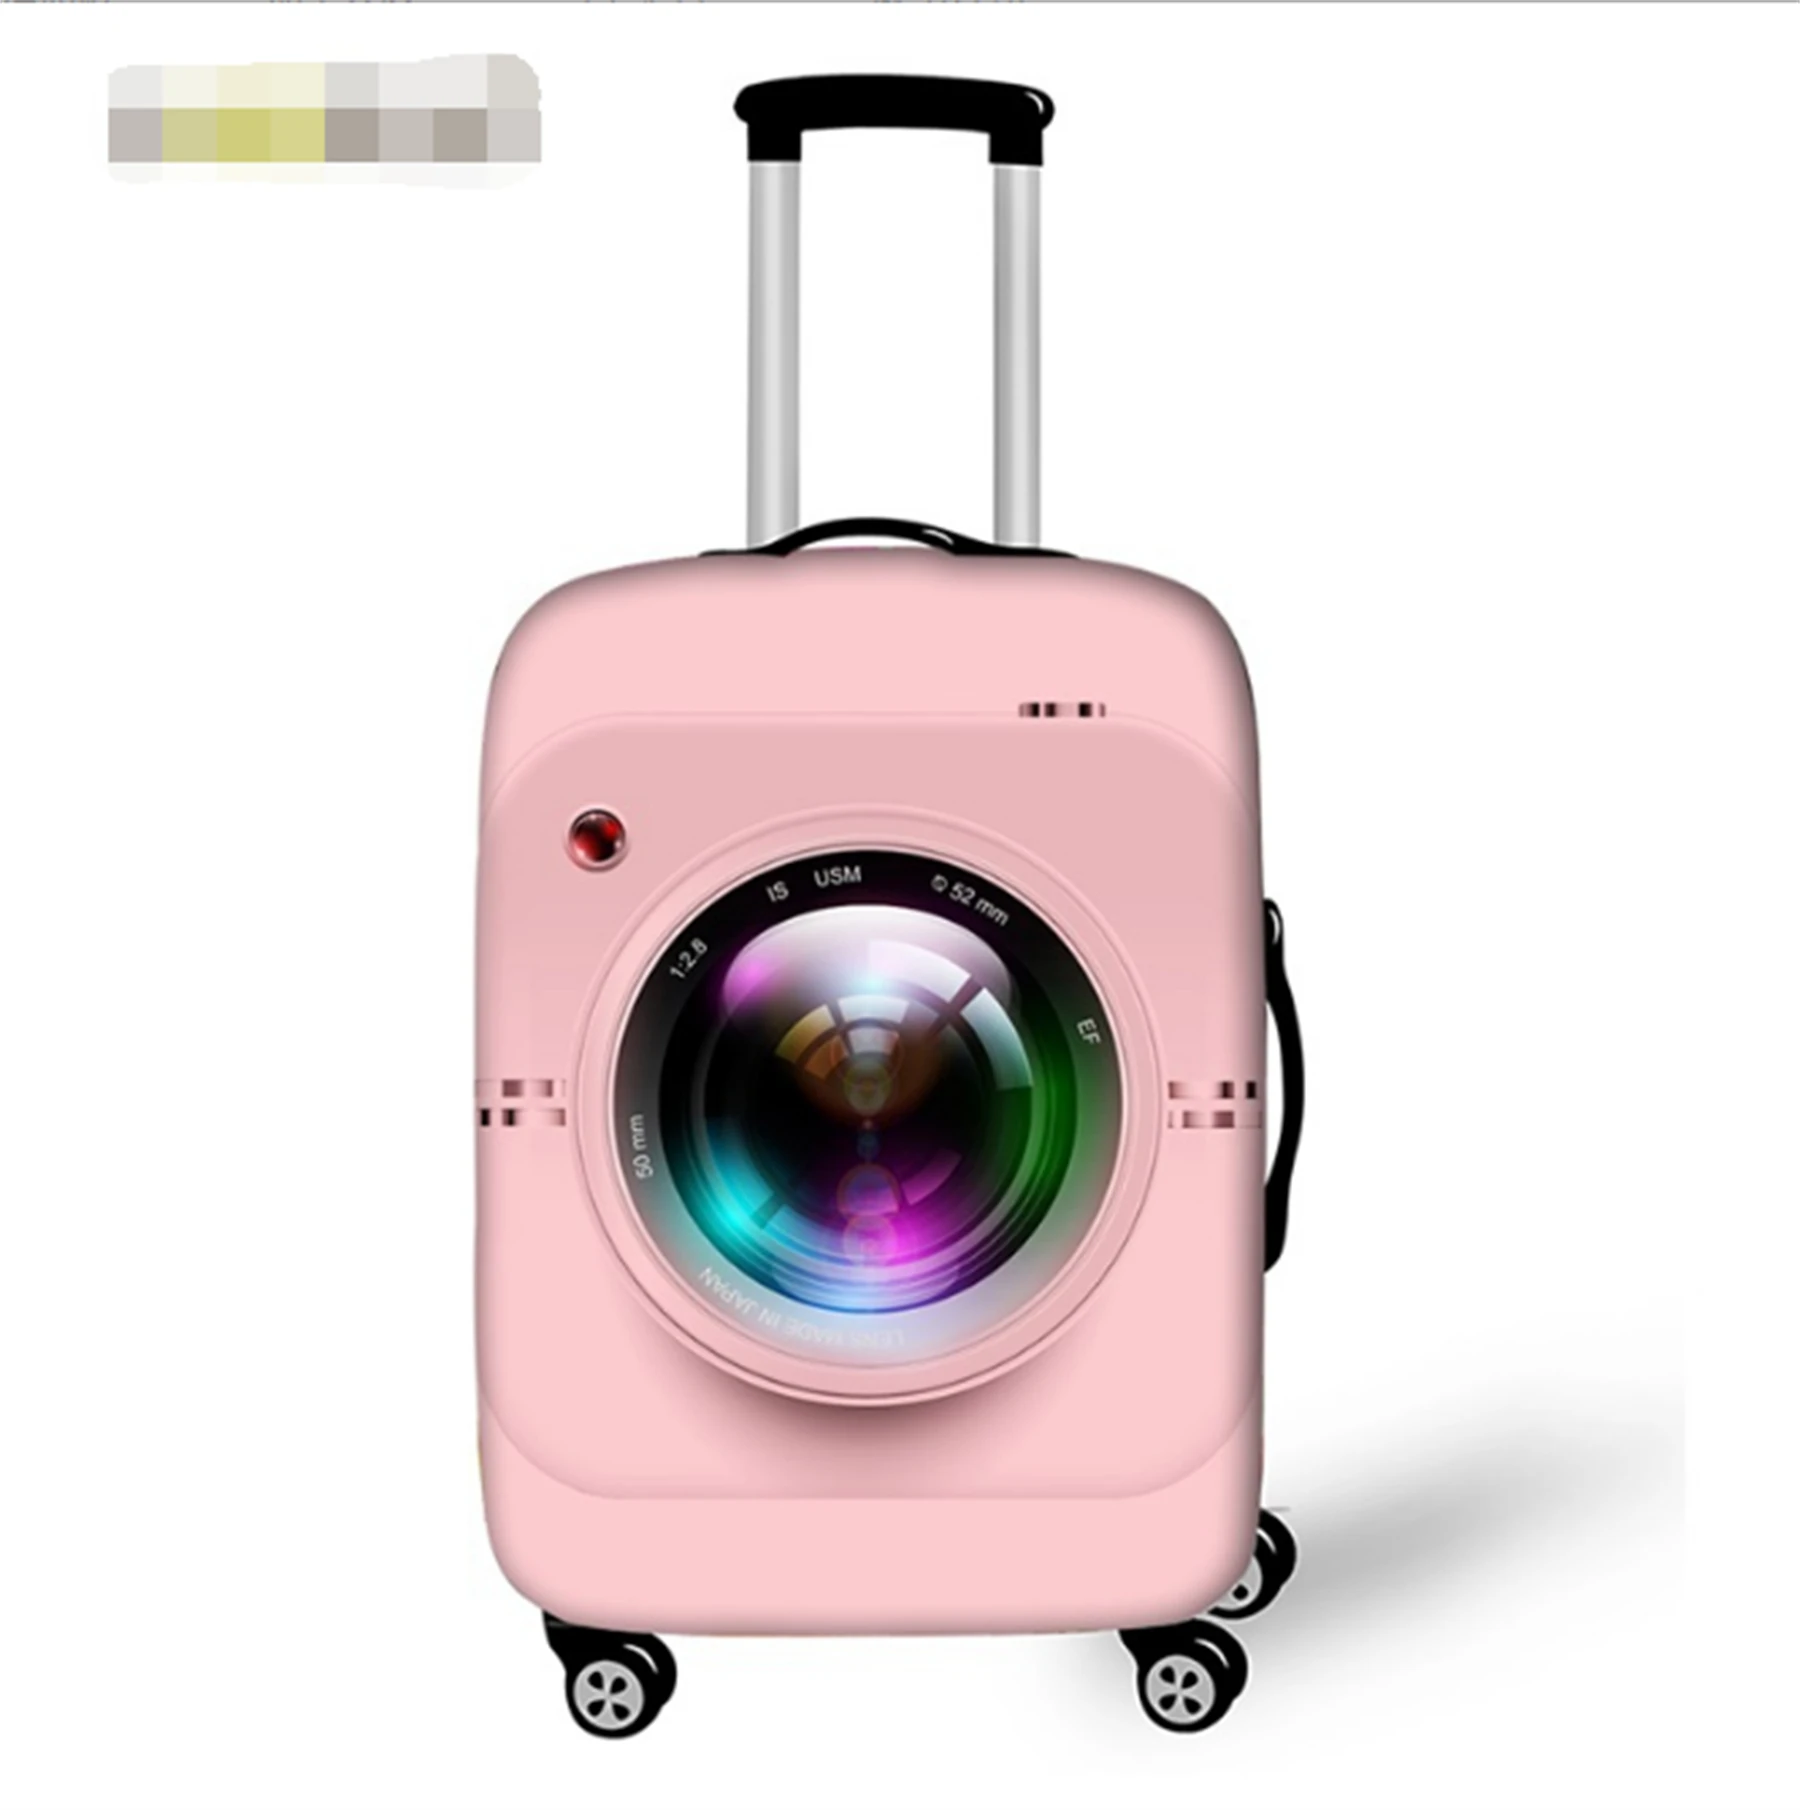 Новая серия камер Графический чемодан Пылезащитный чехол Унисекс Коробка для тяги Защитный чехол 4